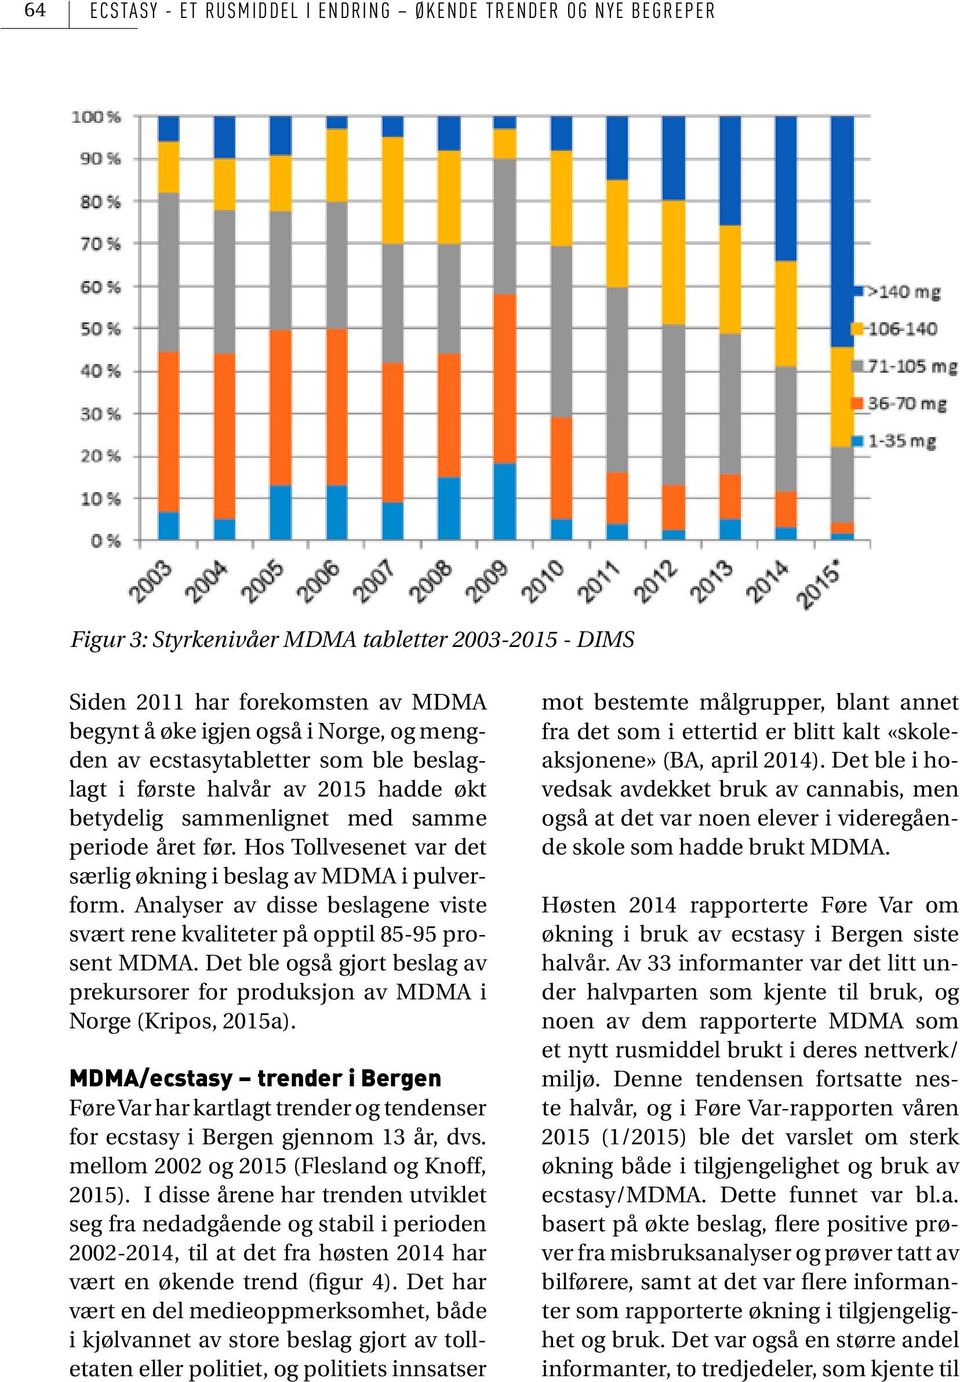 Analyser av disse beslagene viste svært rene kvaliteter på opptil 85-95 prosent MDMA. Det ble også gjort beslag av prekursorer for produksjon av MDMA i Norge (Kripos, 2015a).